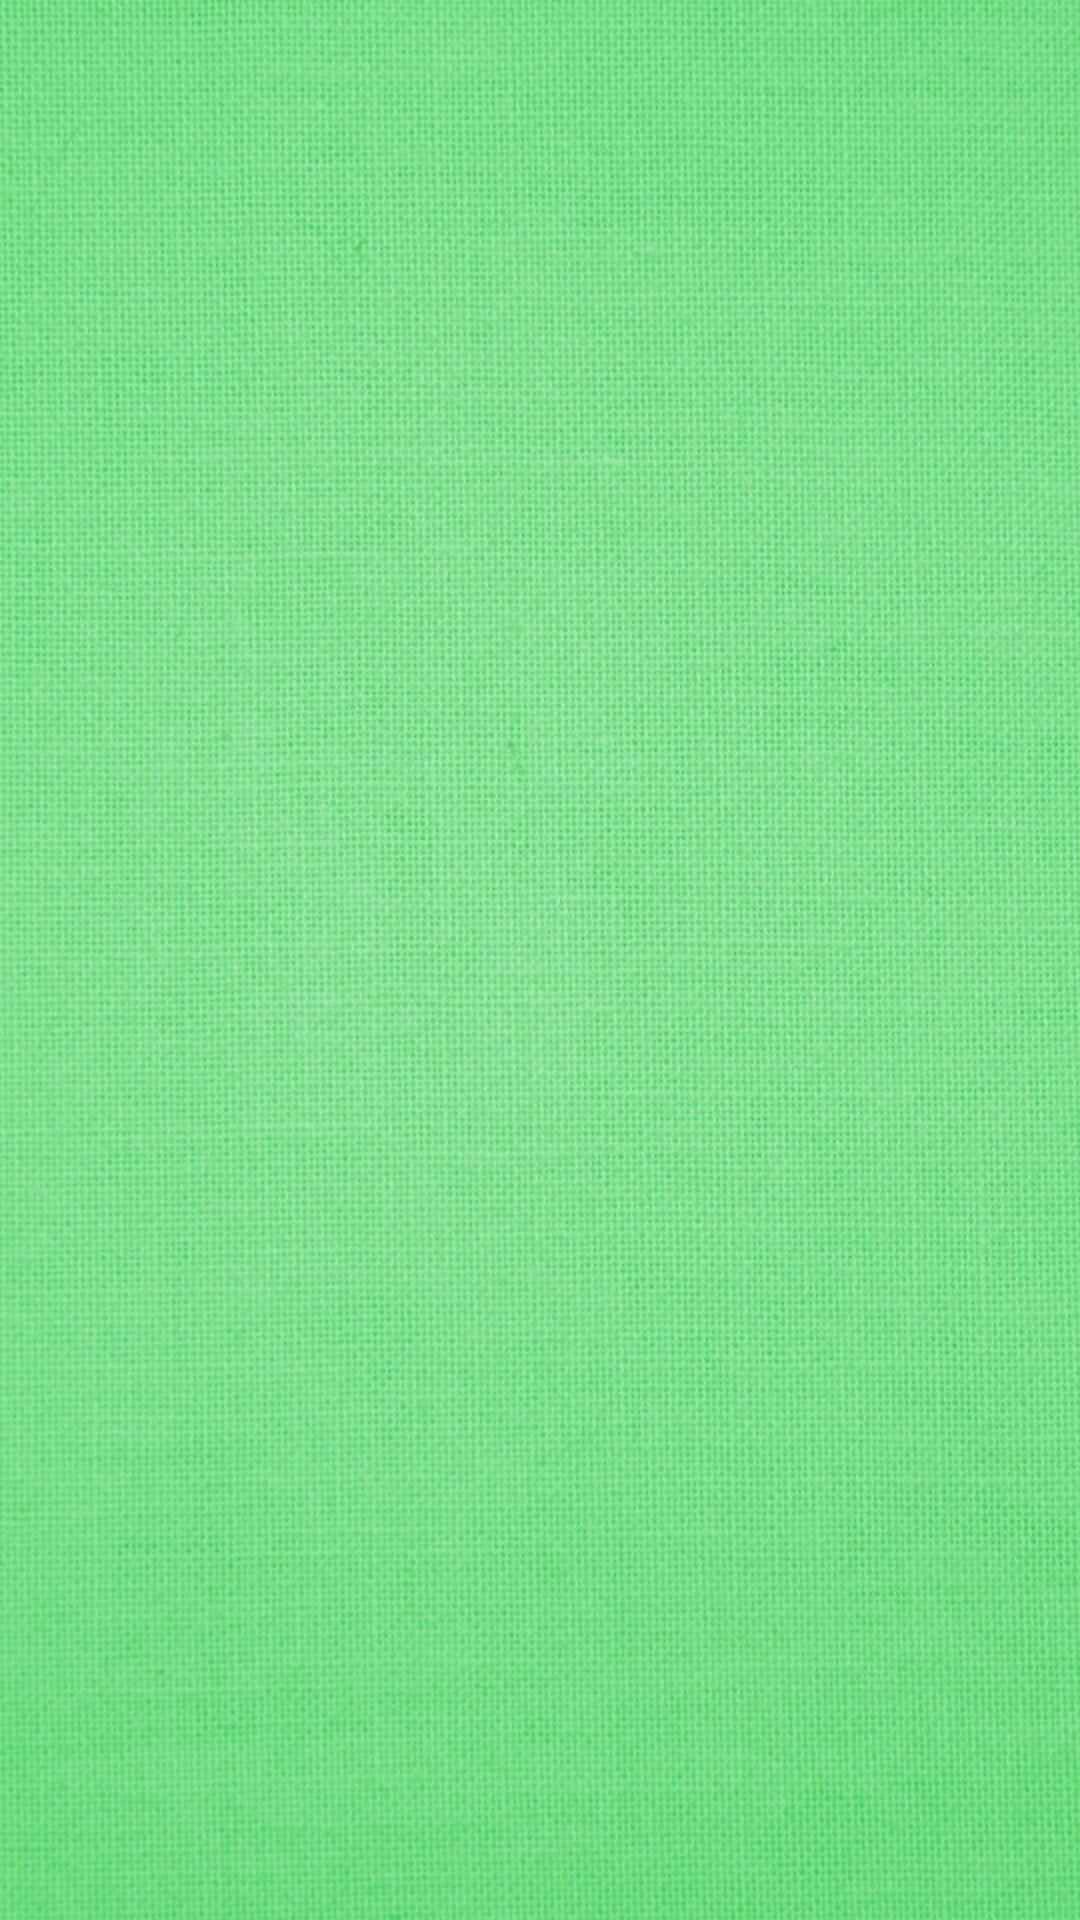 Mint Green iPhone 7 Wallpaper Cute Wallpaper